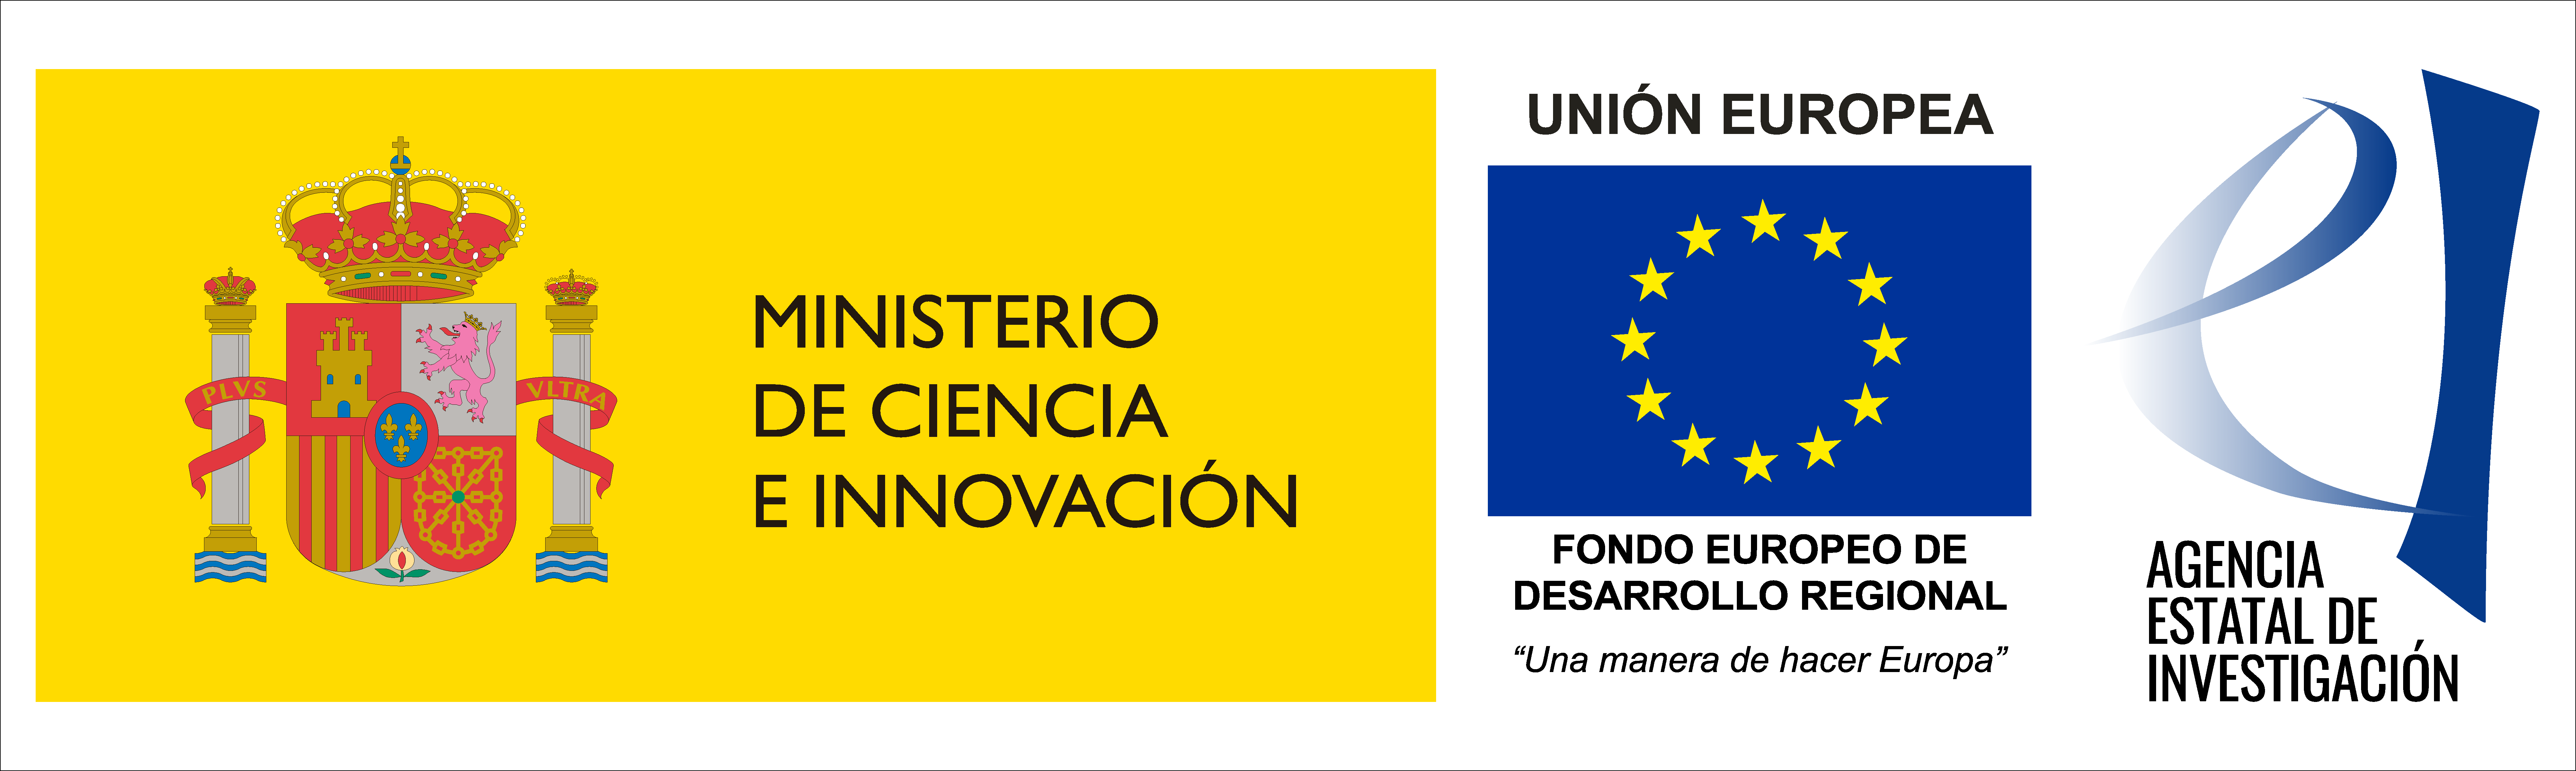 Ministerio de Ciencia e Innovación/UE/Agencia Estatal de Investigación